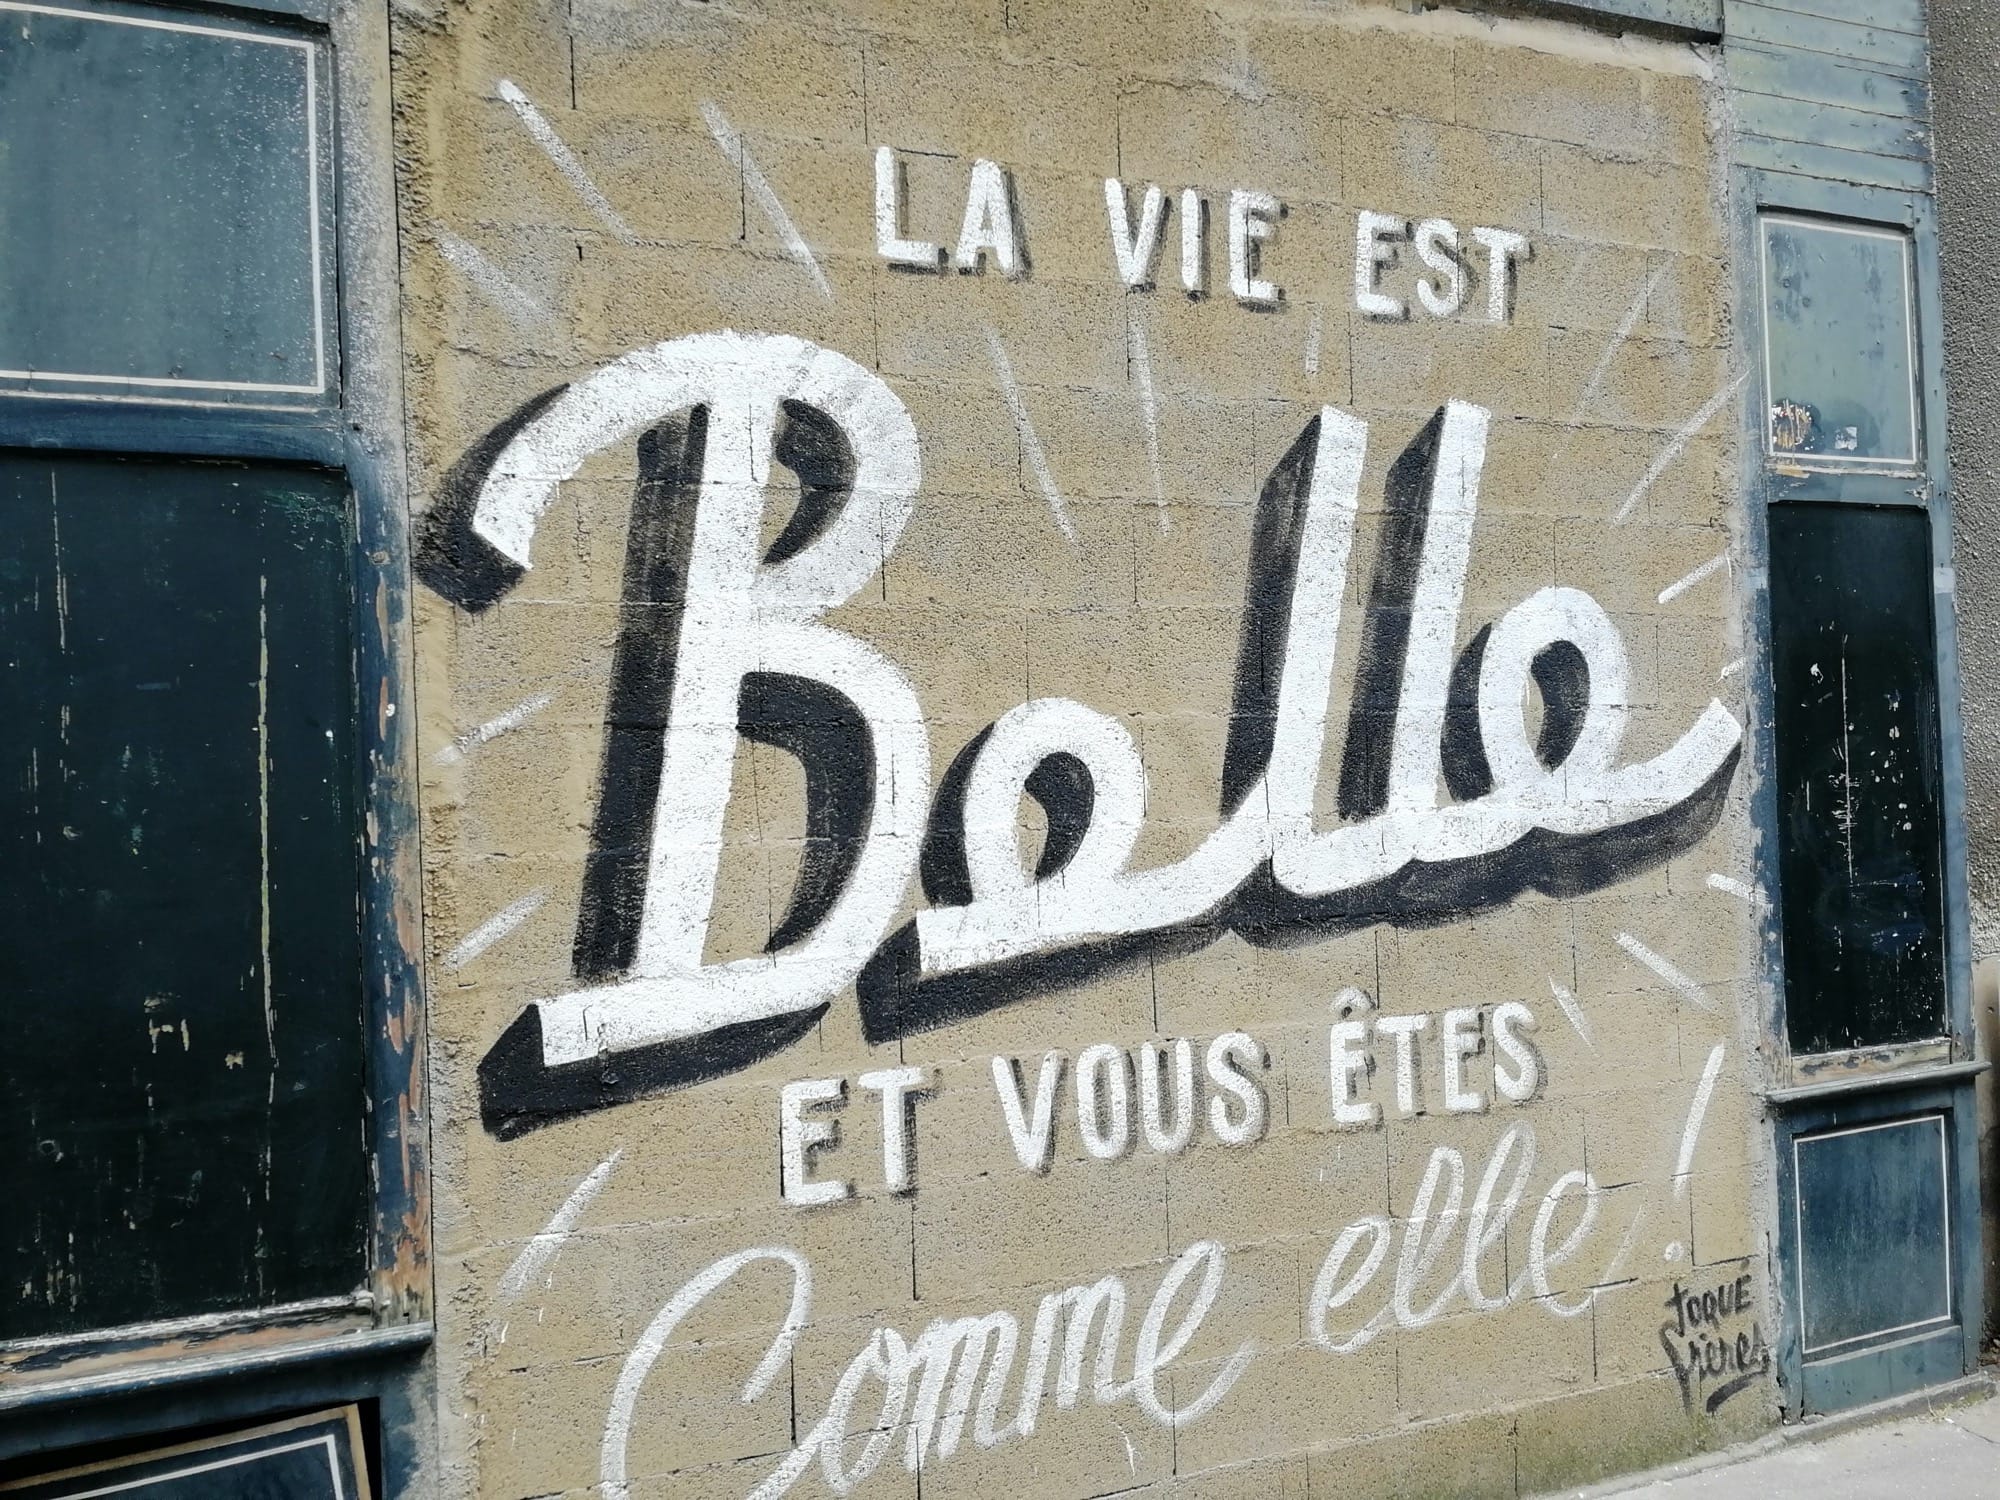 Graffiti 1524 La vie est belle, et vous êtes comme elle ! by the artist Toqué frères captured by Rabot in Nantes France